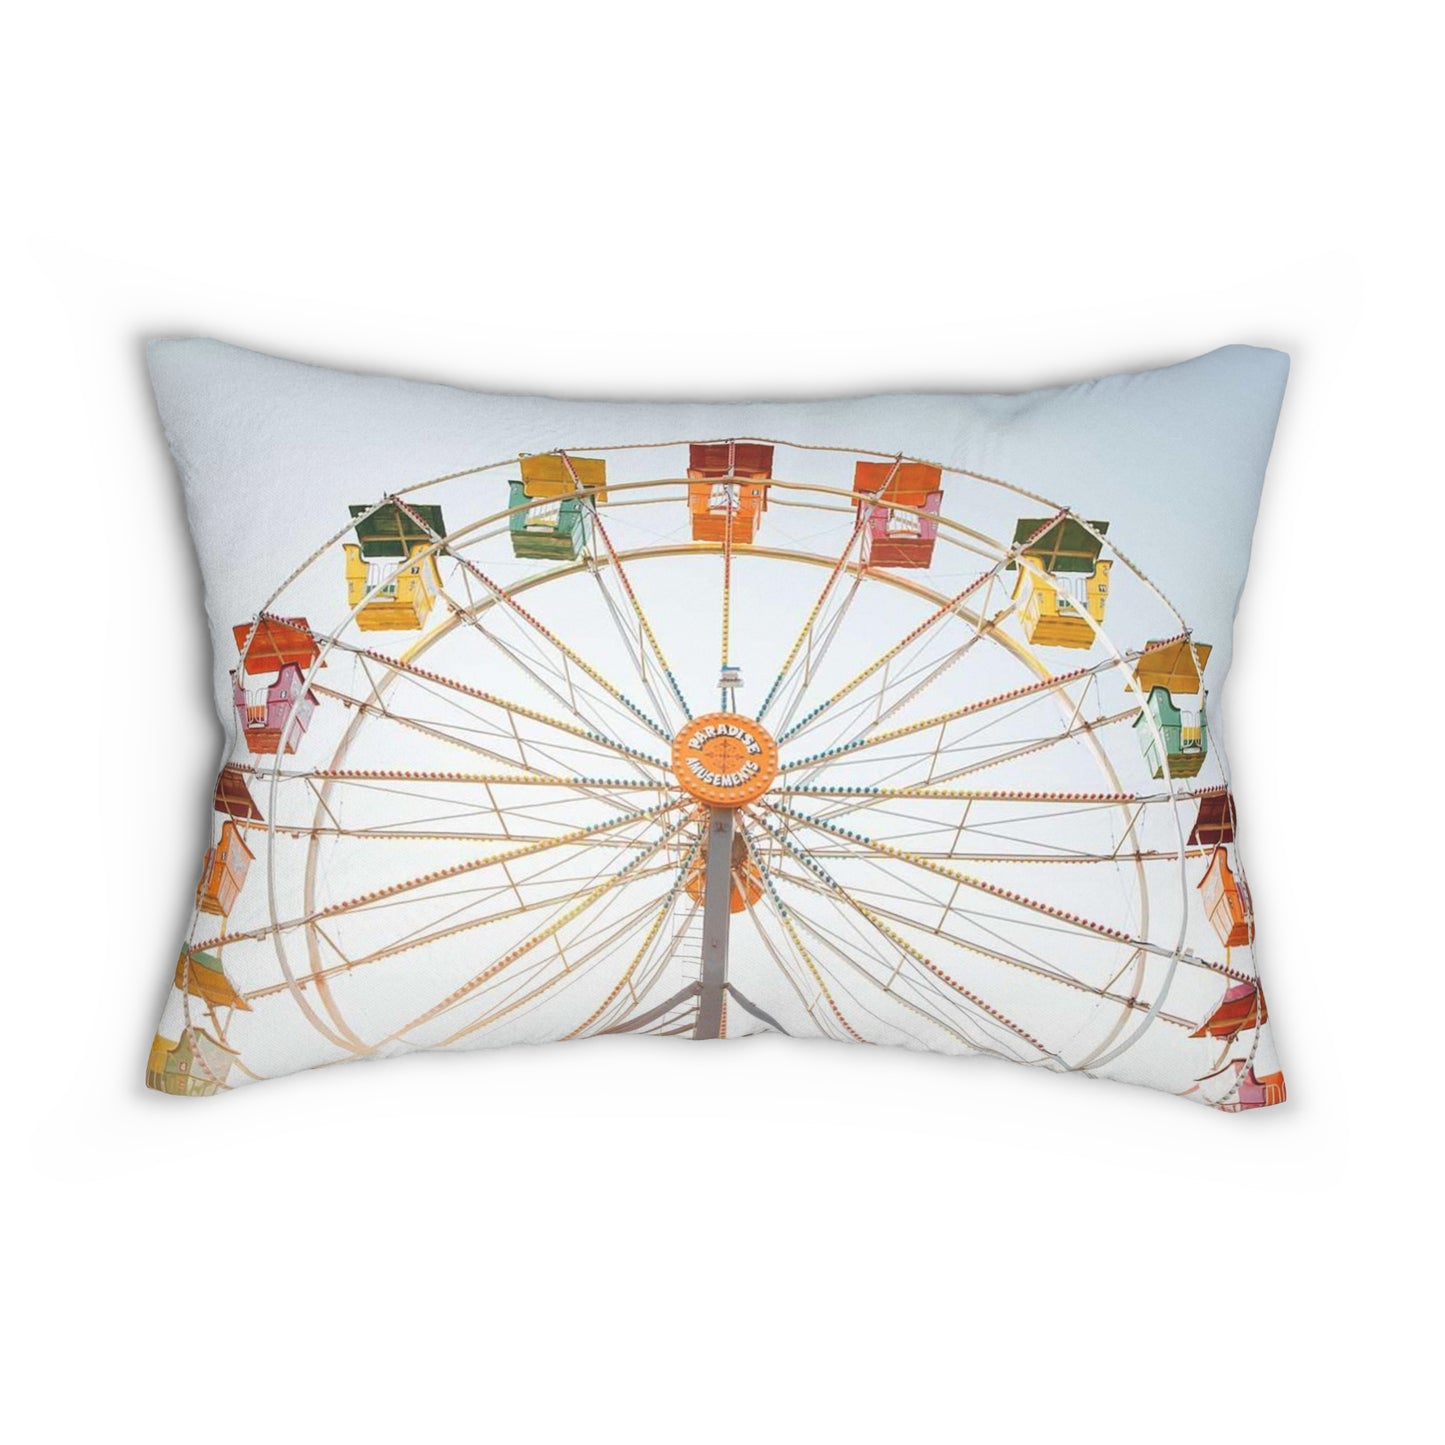 Farris Wheel Spun Polyester Lumbar Pillow